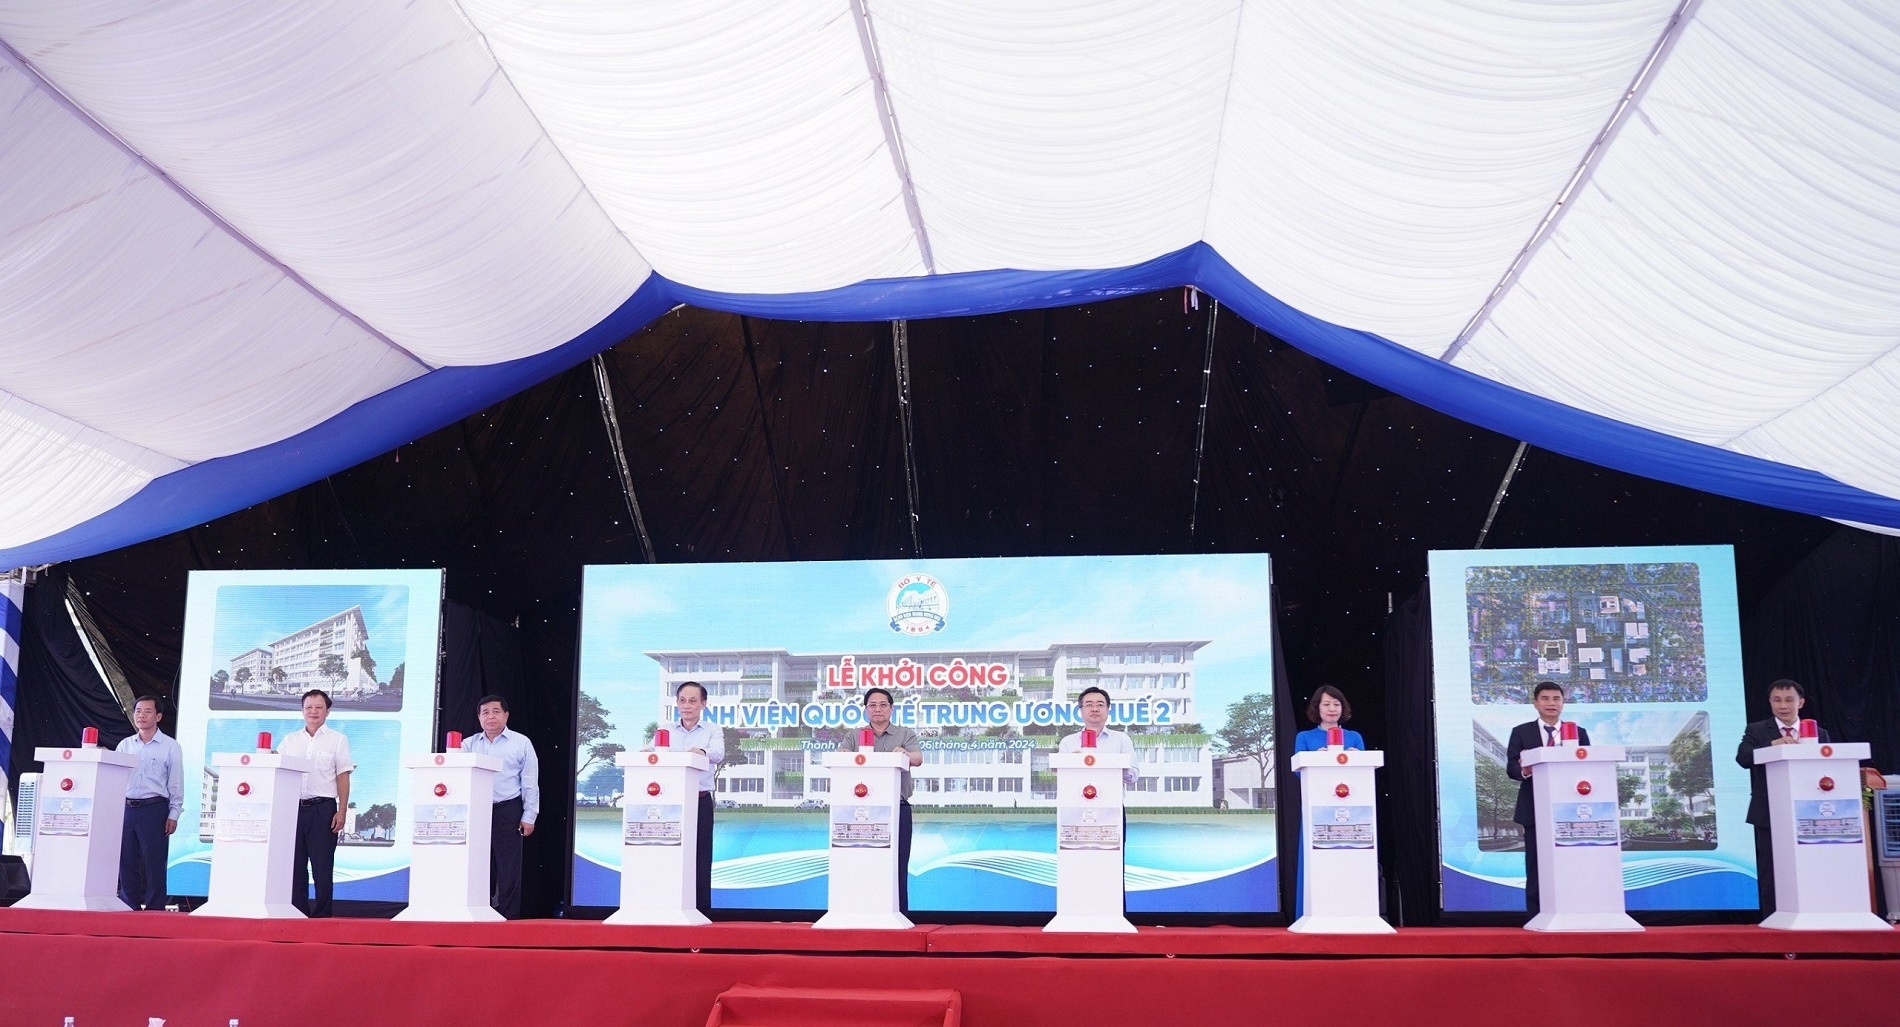 Thủ tướng dự lễ khởi công Bệnh viện Quốc tế Trung ương Huế 2 - ảnh 2